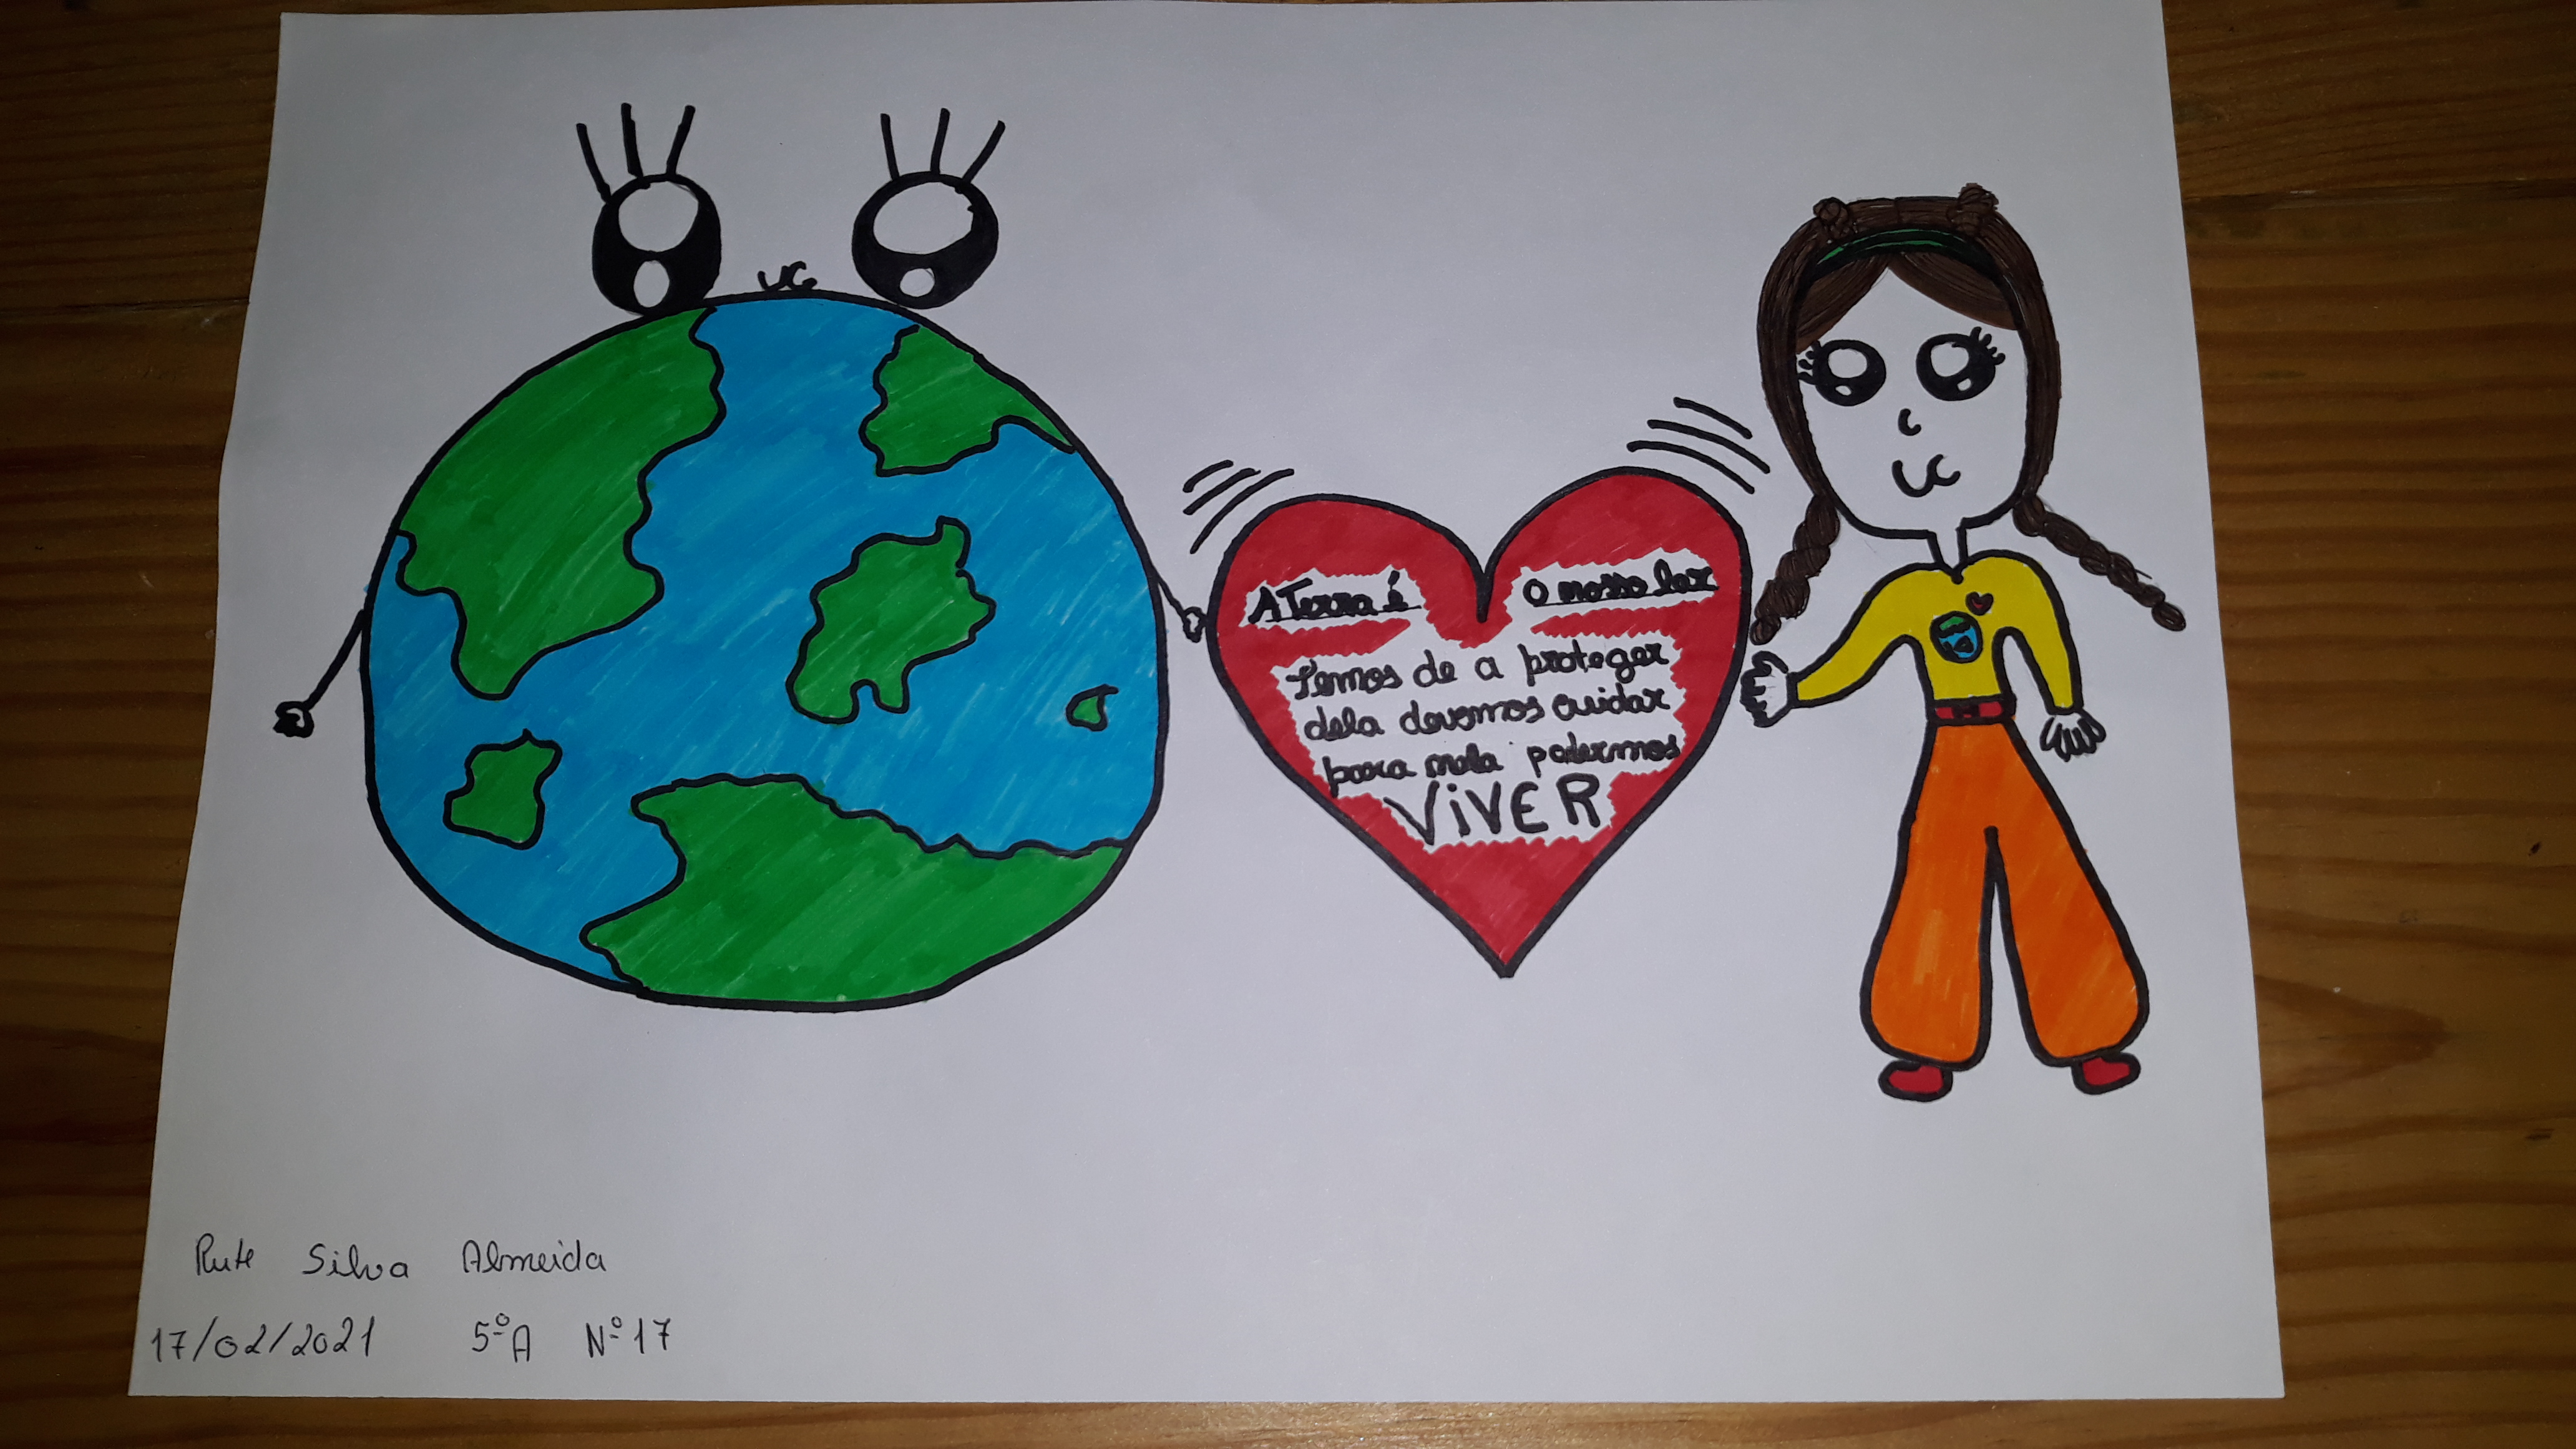 Rute Silva Almeida, 5º ano<br/><br/>A Terra é o nosso lar<br />
Temos de a proteger<br />
dela devemos cuidar<br />
para nela podermos<br />
Viver